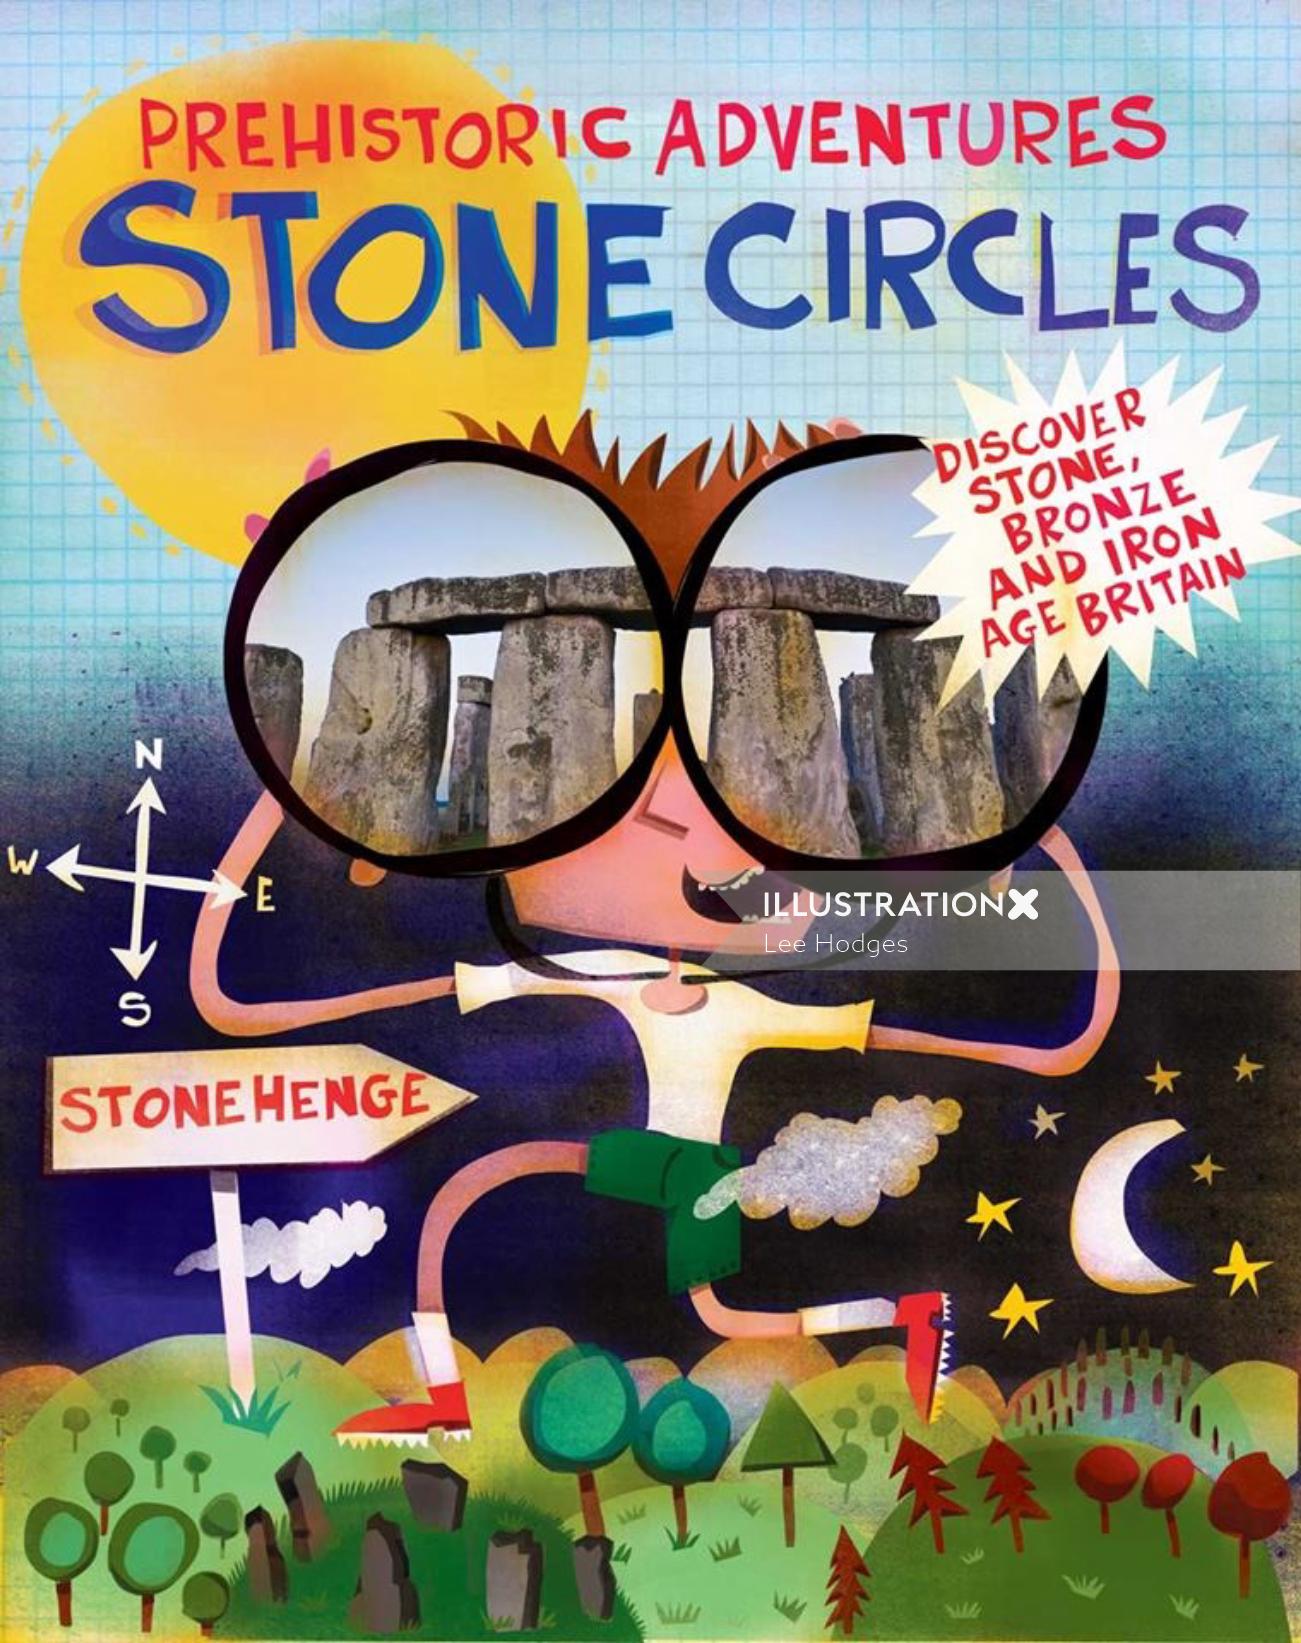 Arte da capa do livro Círculos de Pedra